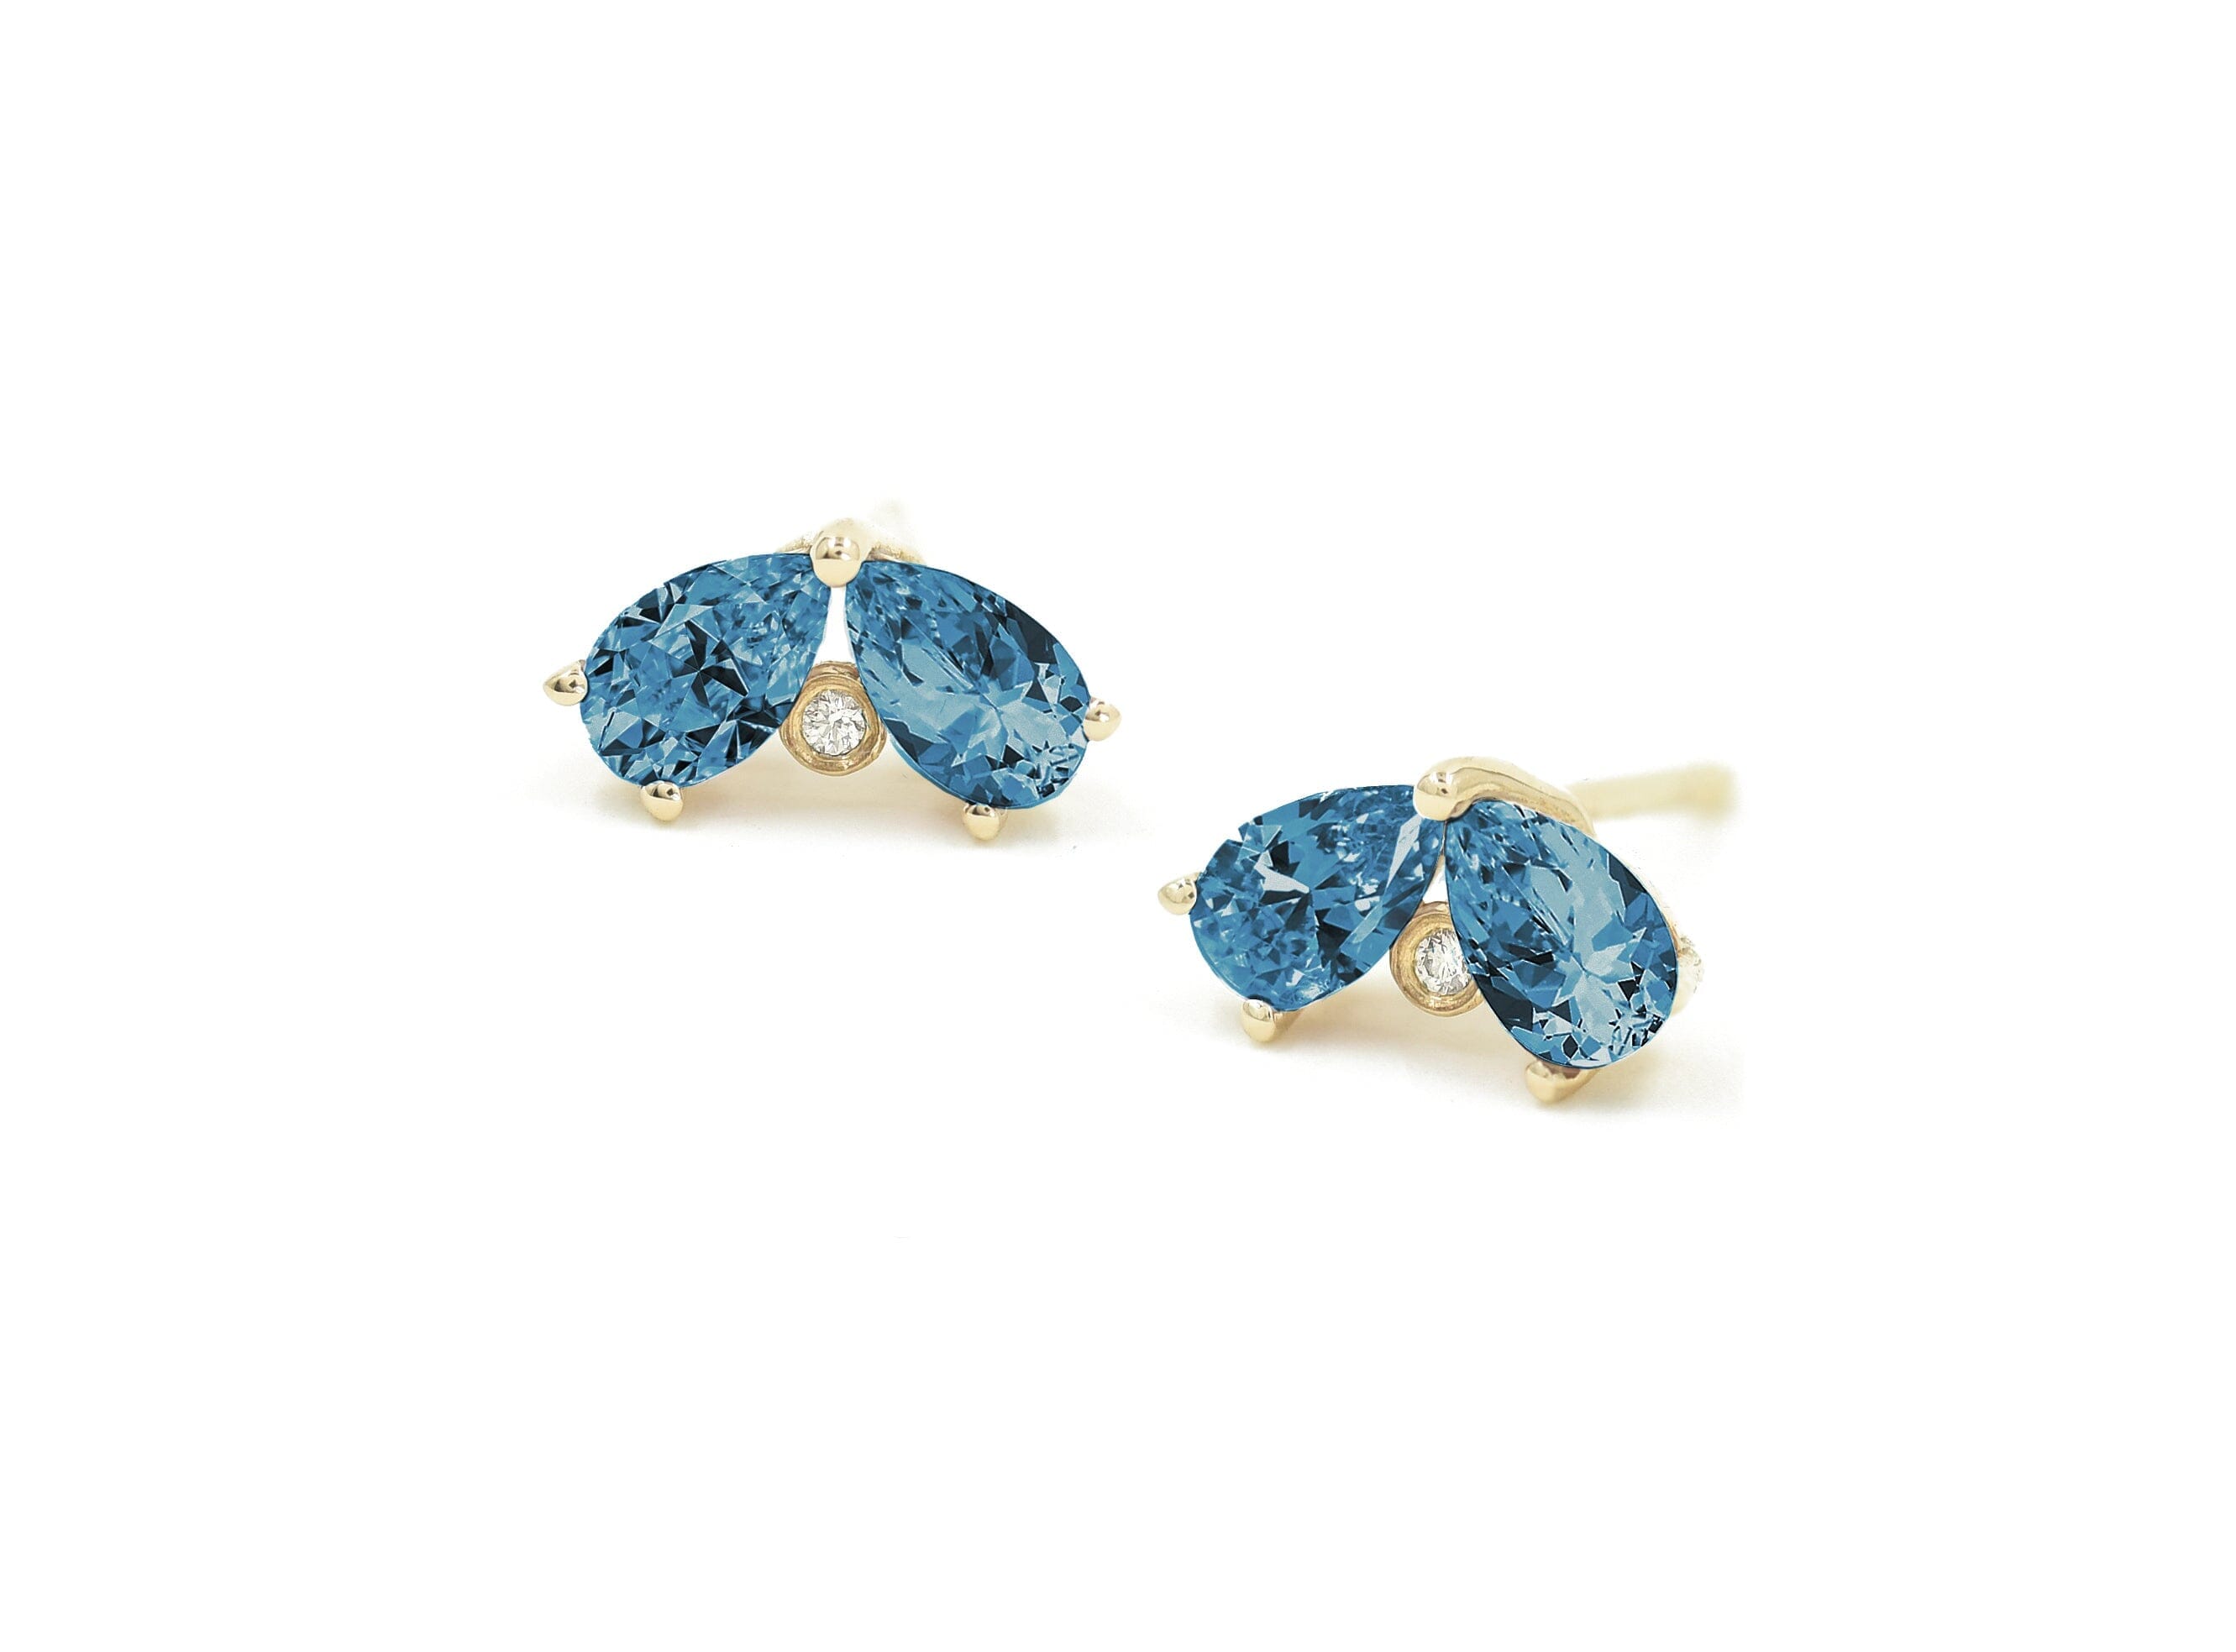 Butterfly Earrings Earrings - BONDEYE JEWELRY ®